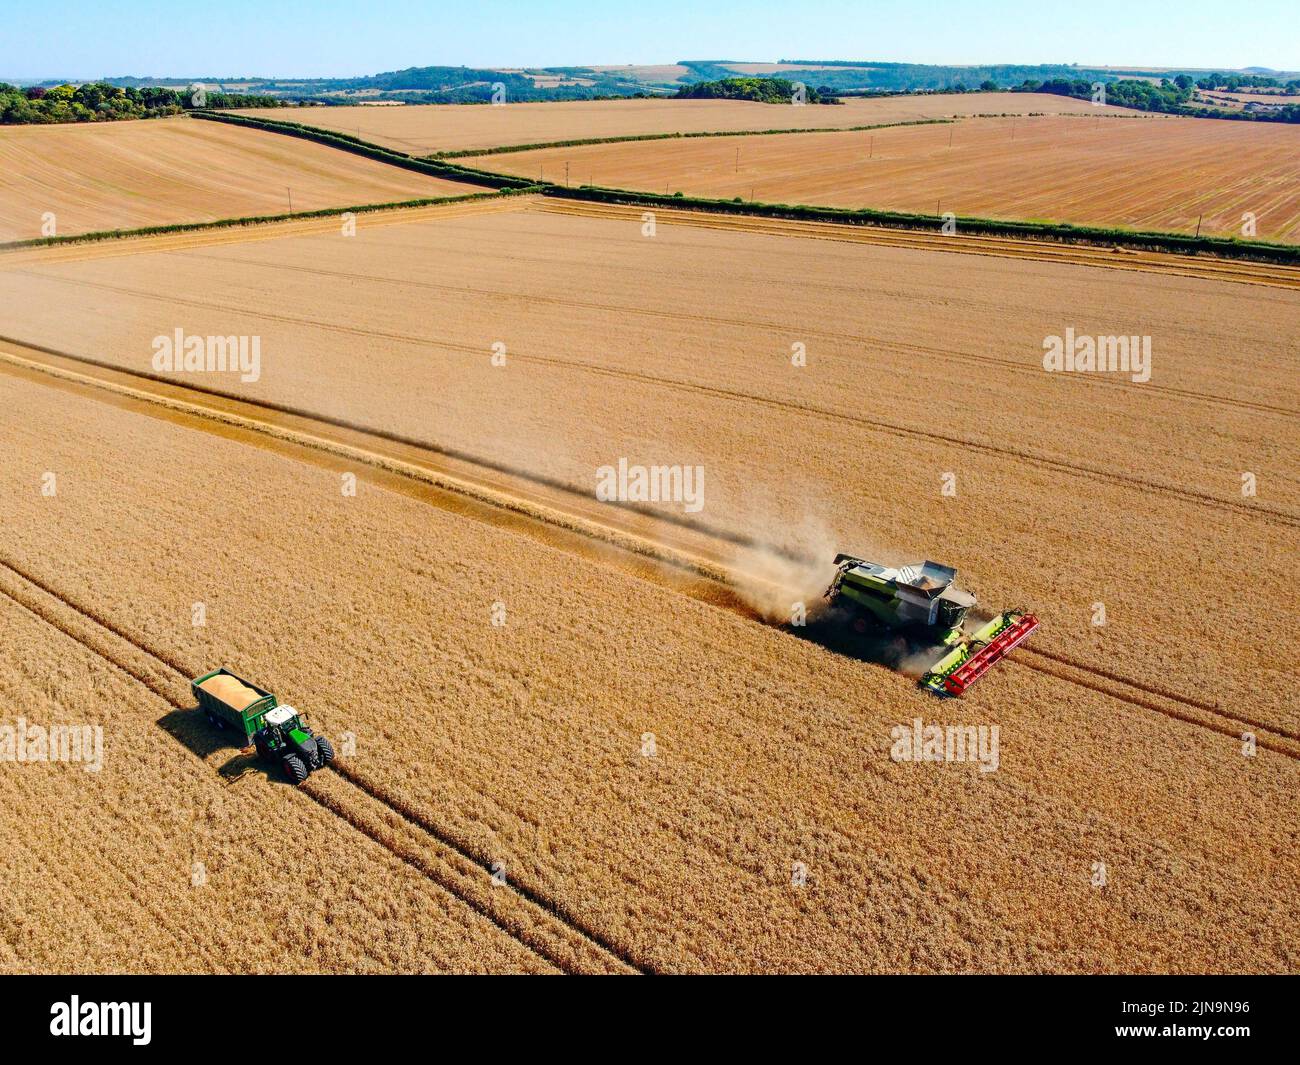 Vista aérea de una cosechadora en un paisaje de campos de trigo en las tierras de cultivo de North Yorkshire en el Reino Unido. Foto de stock